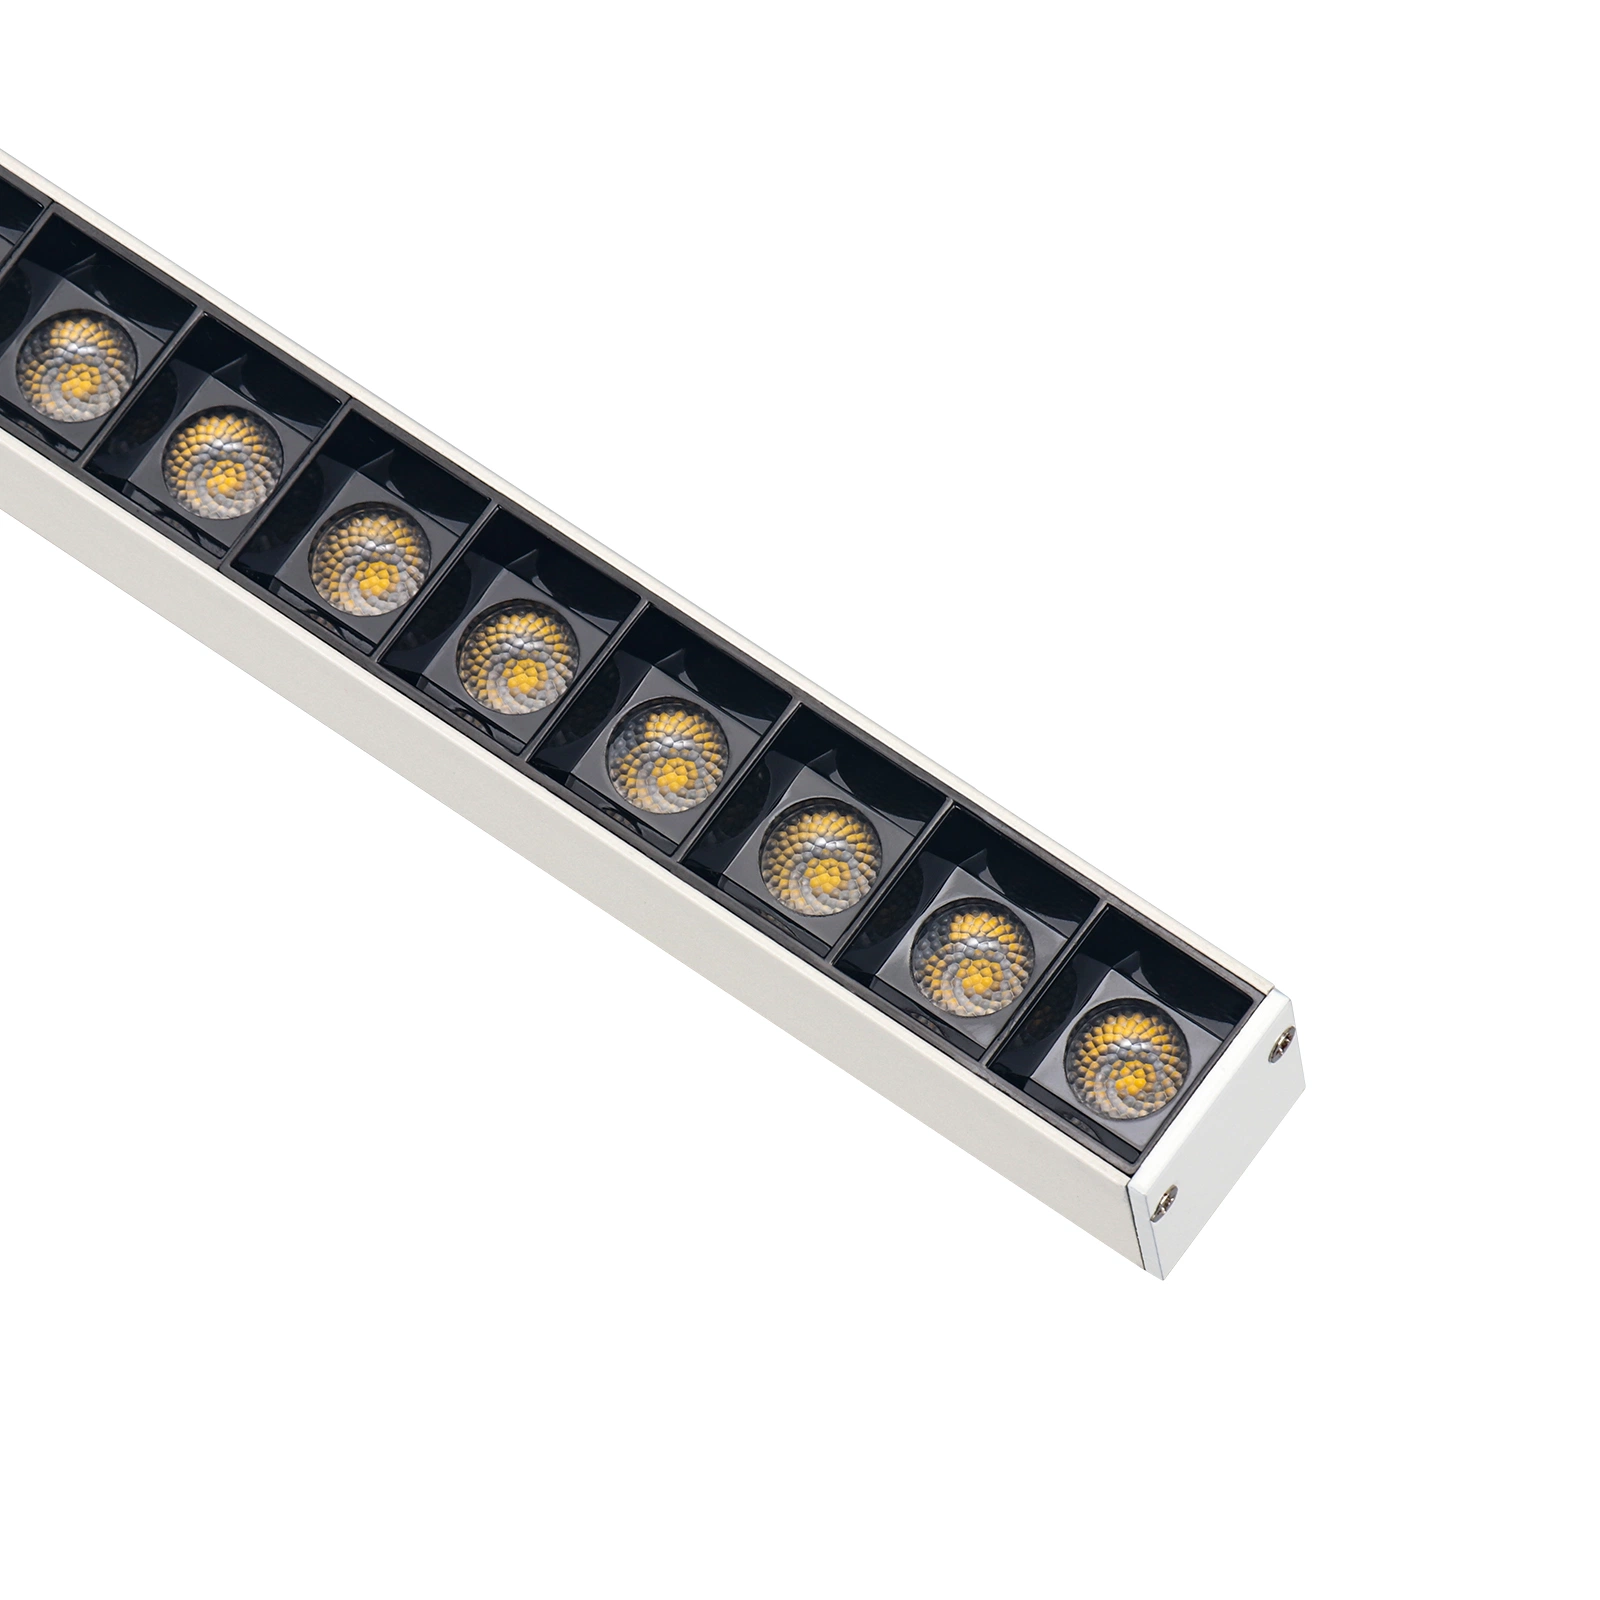 Trimless interior de la carcasa de aluminio 15W 36W de iluminación lineal LED LED Empotrables Luz lineal de IP44 techo moderno dispositivo de luz lineal